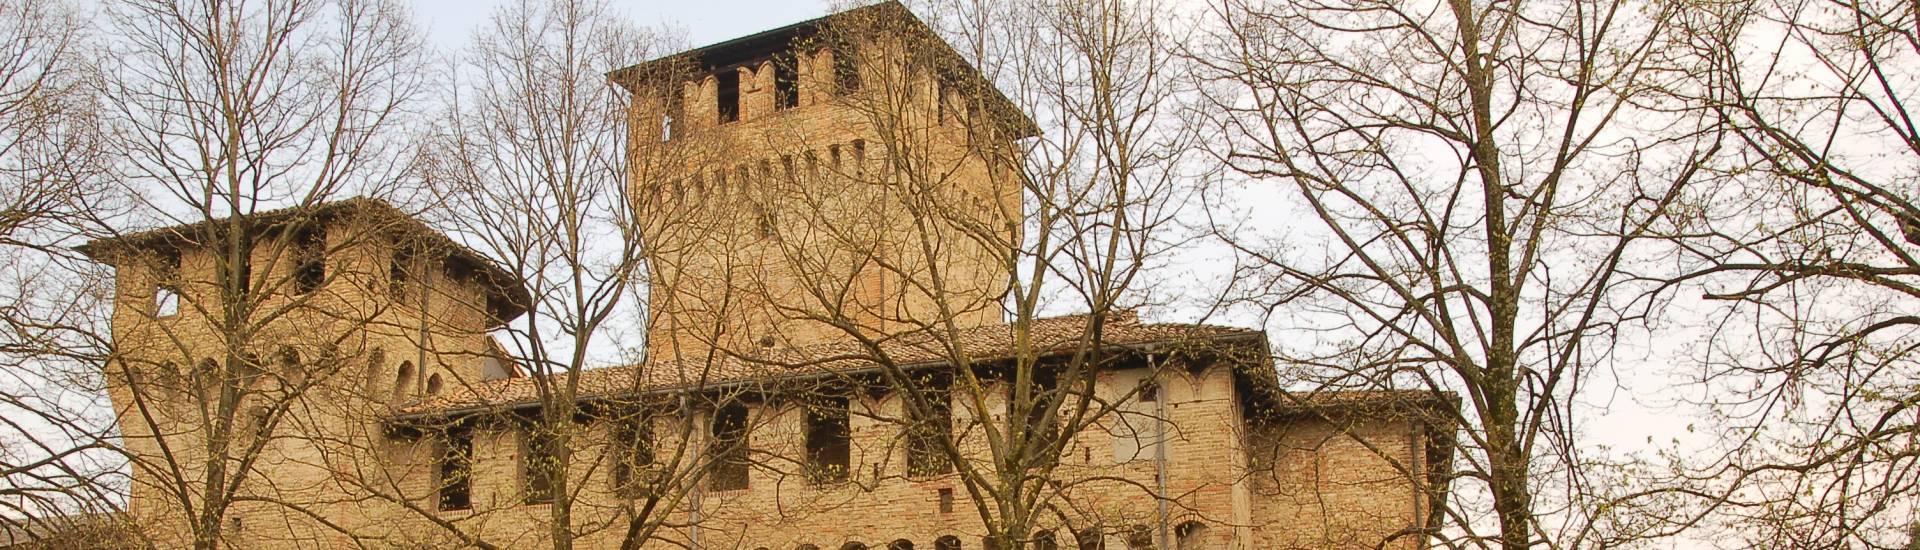 Rocca di Montecchio Emilia - The castle photo credits: |Comune di Montecchio Emilia| - Comune di Montecchio Emilia